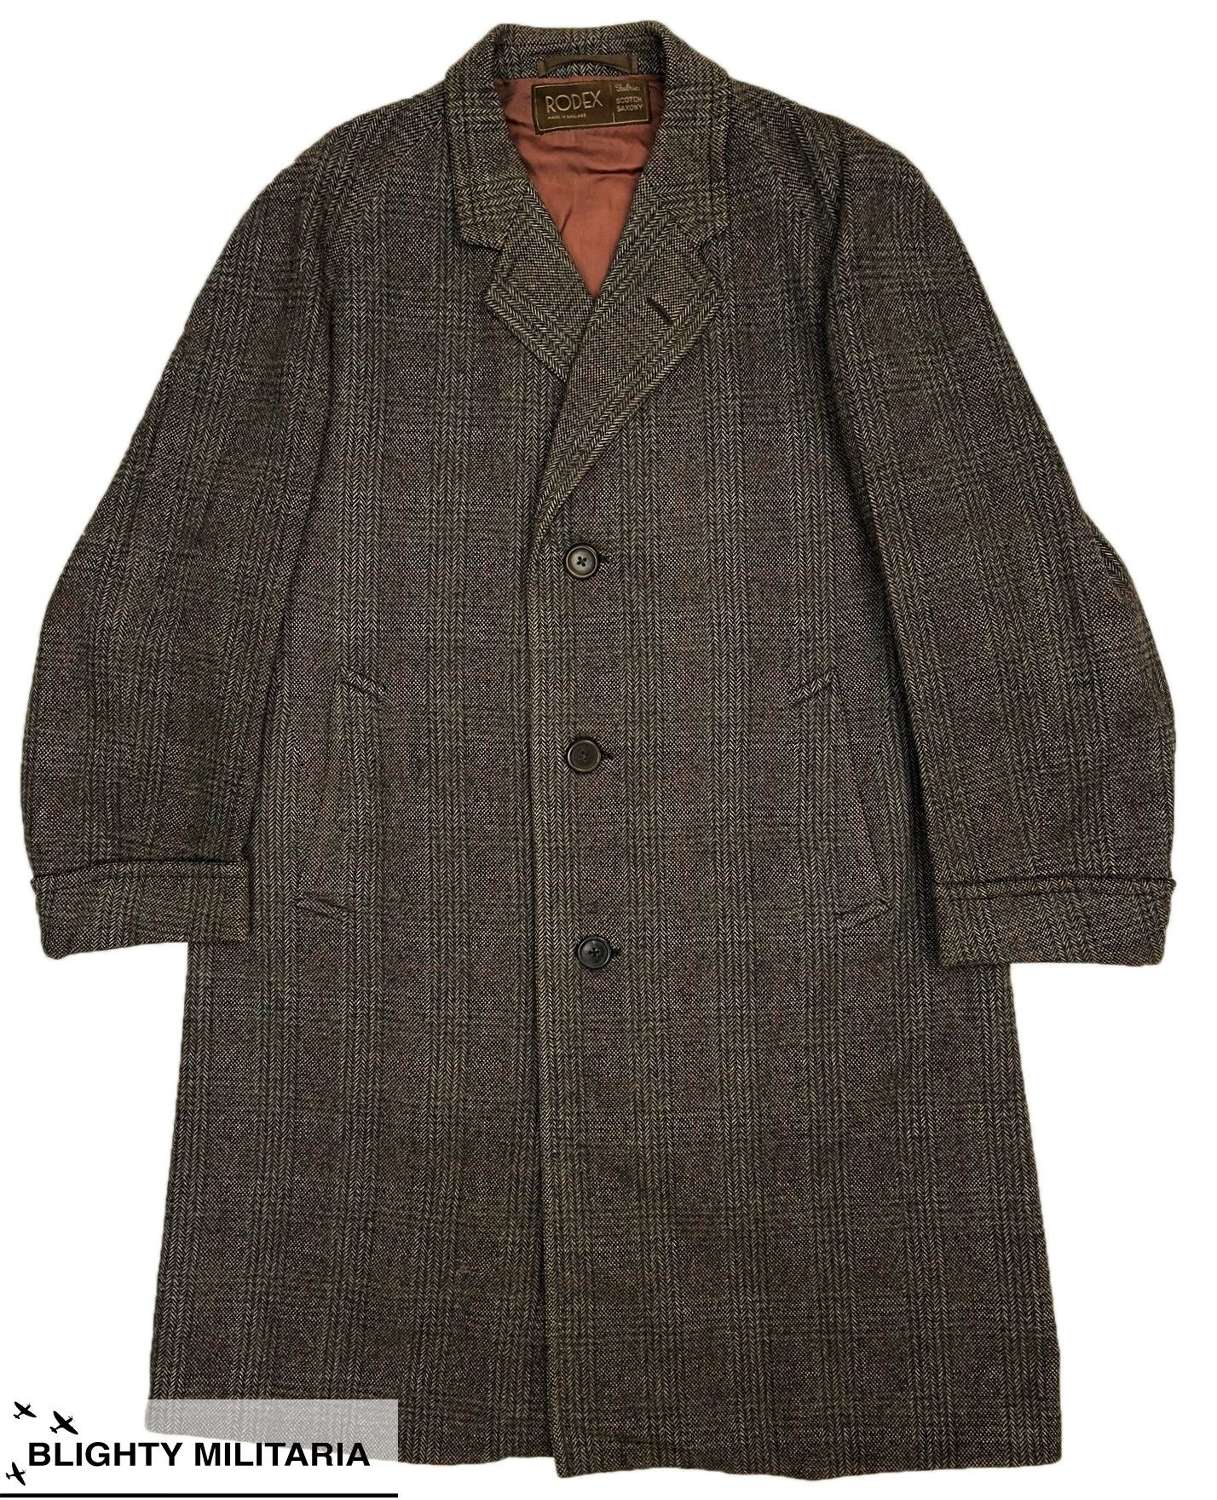 Original 1960s British Herringbone Wool Overcoat by 'Rodex'